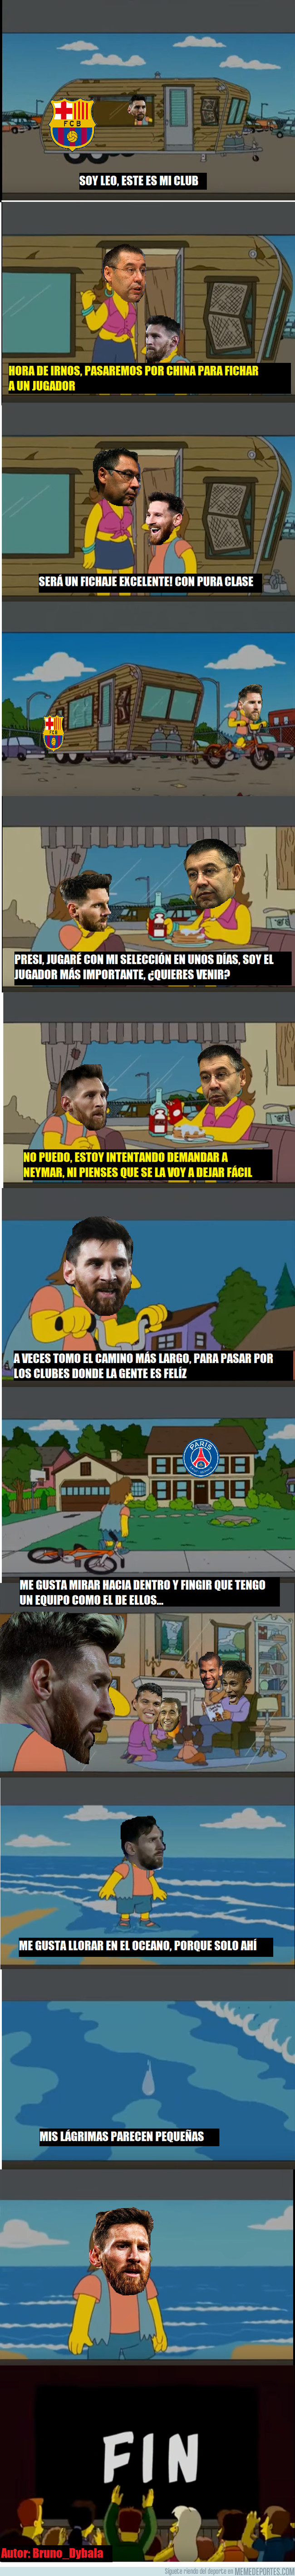 995069 - Messi en busca de la felicidad